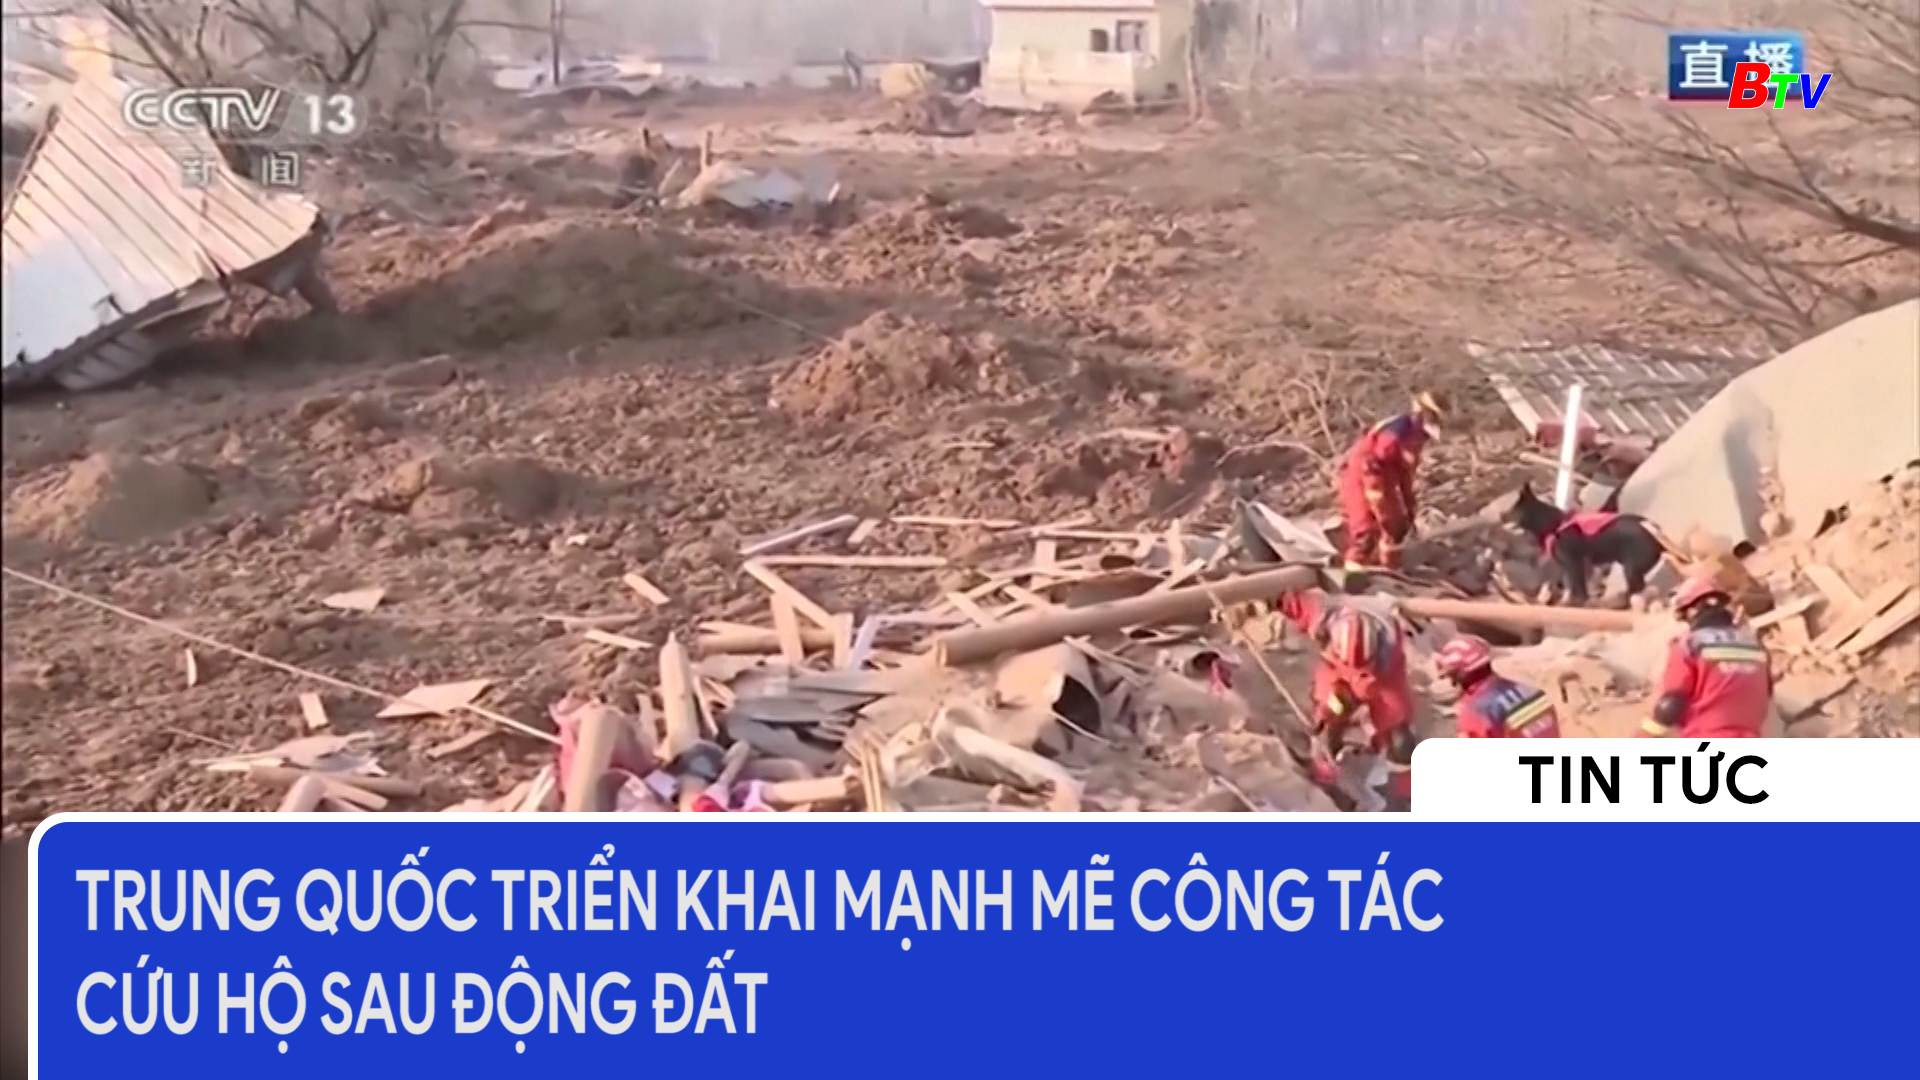 Trung Quốc triển khai mạnh mẽ công tác cứu hộ sau động đất